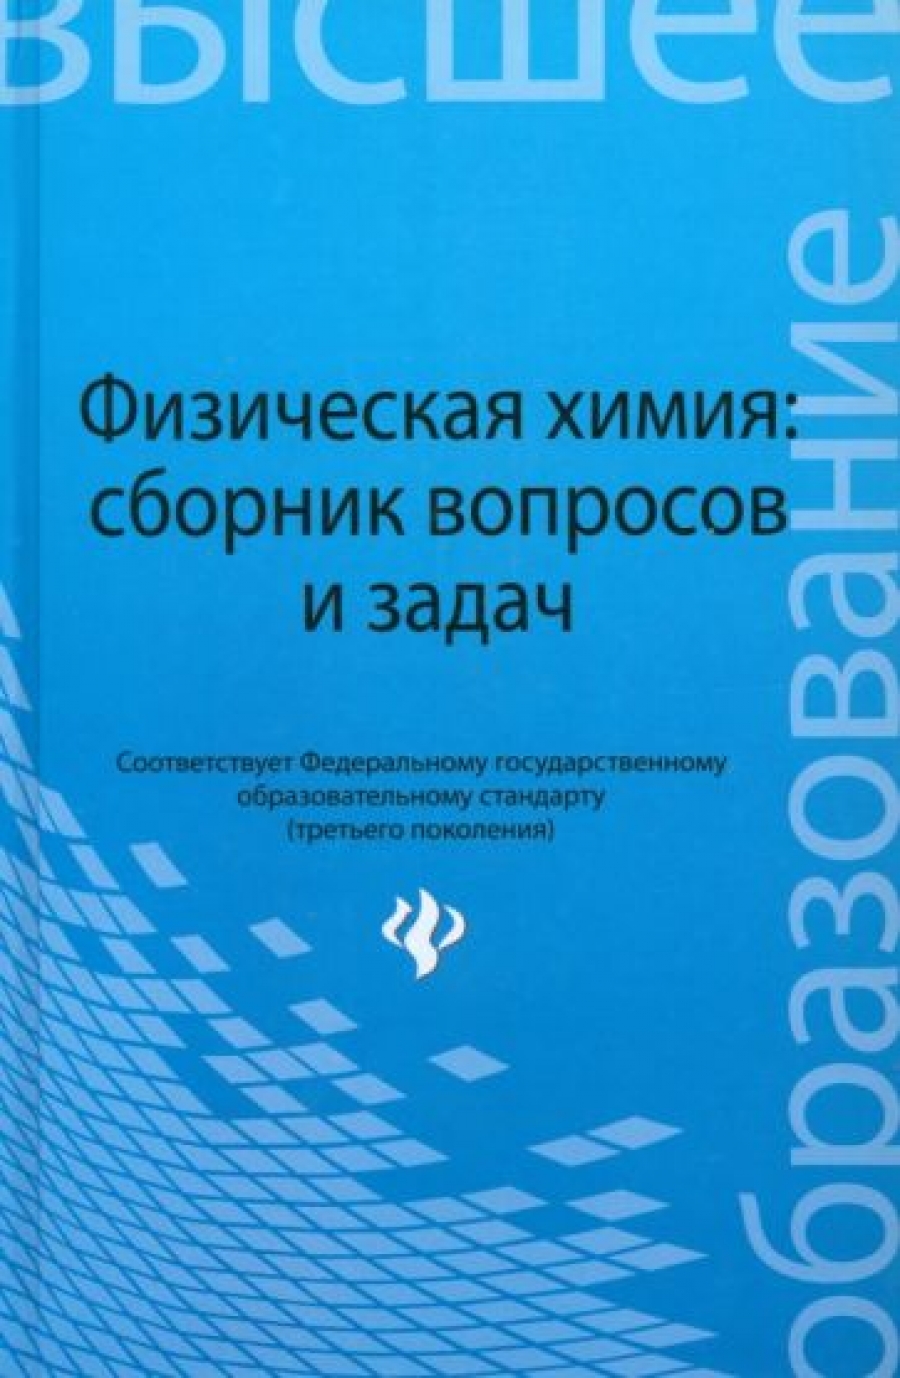 Батраков В.В., Савиткин Н.И., Авдеев Я.Г. Физическая химия: сборник вопросов и задач 